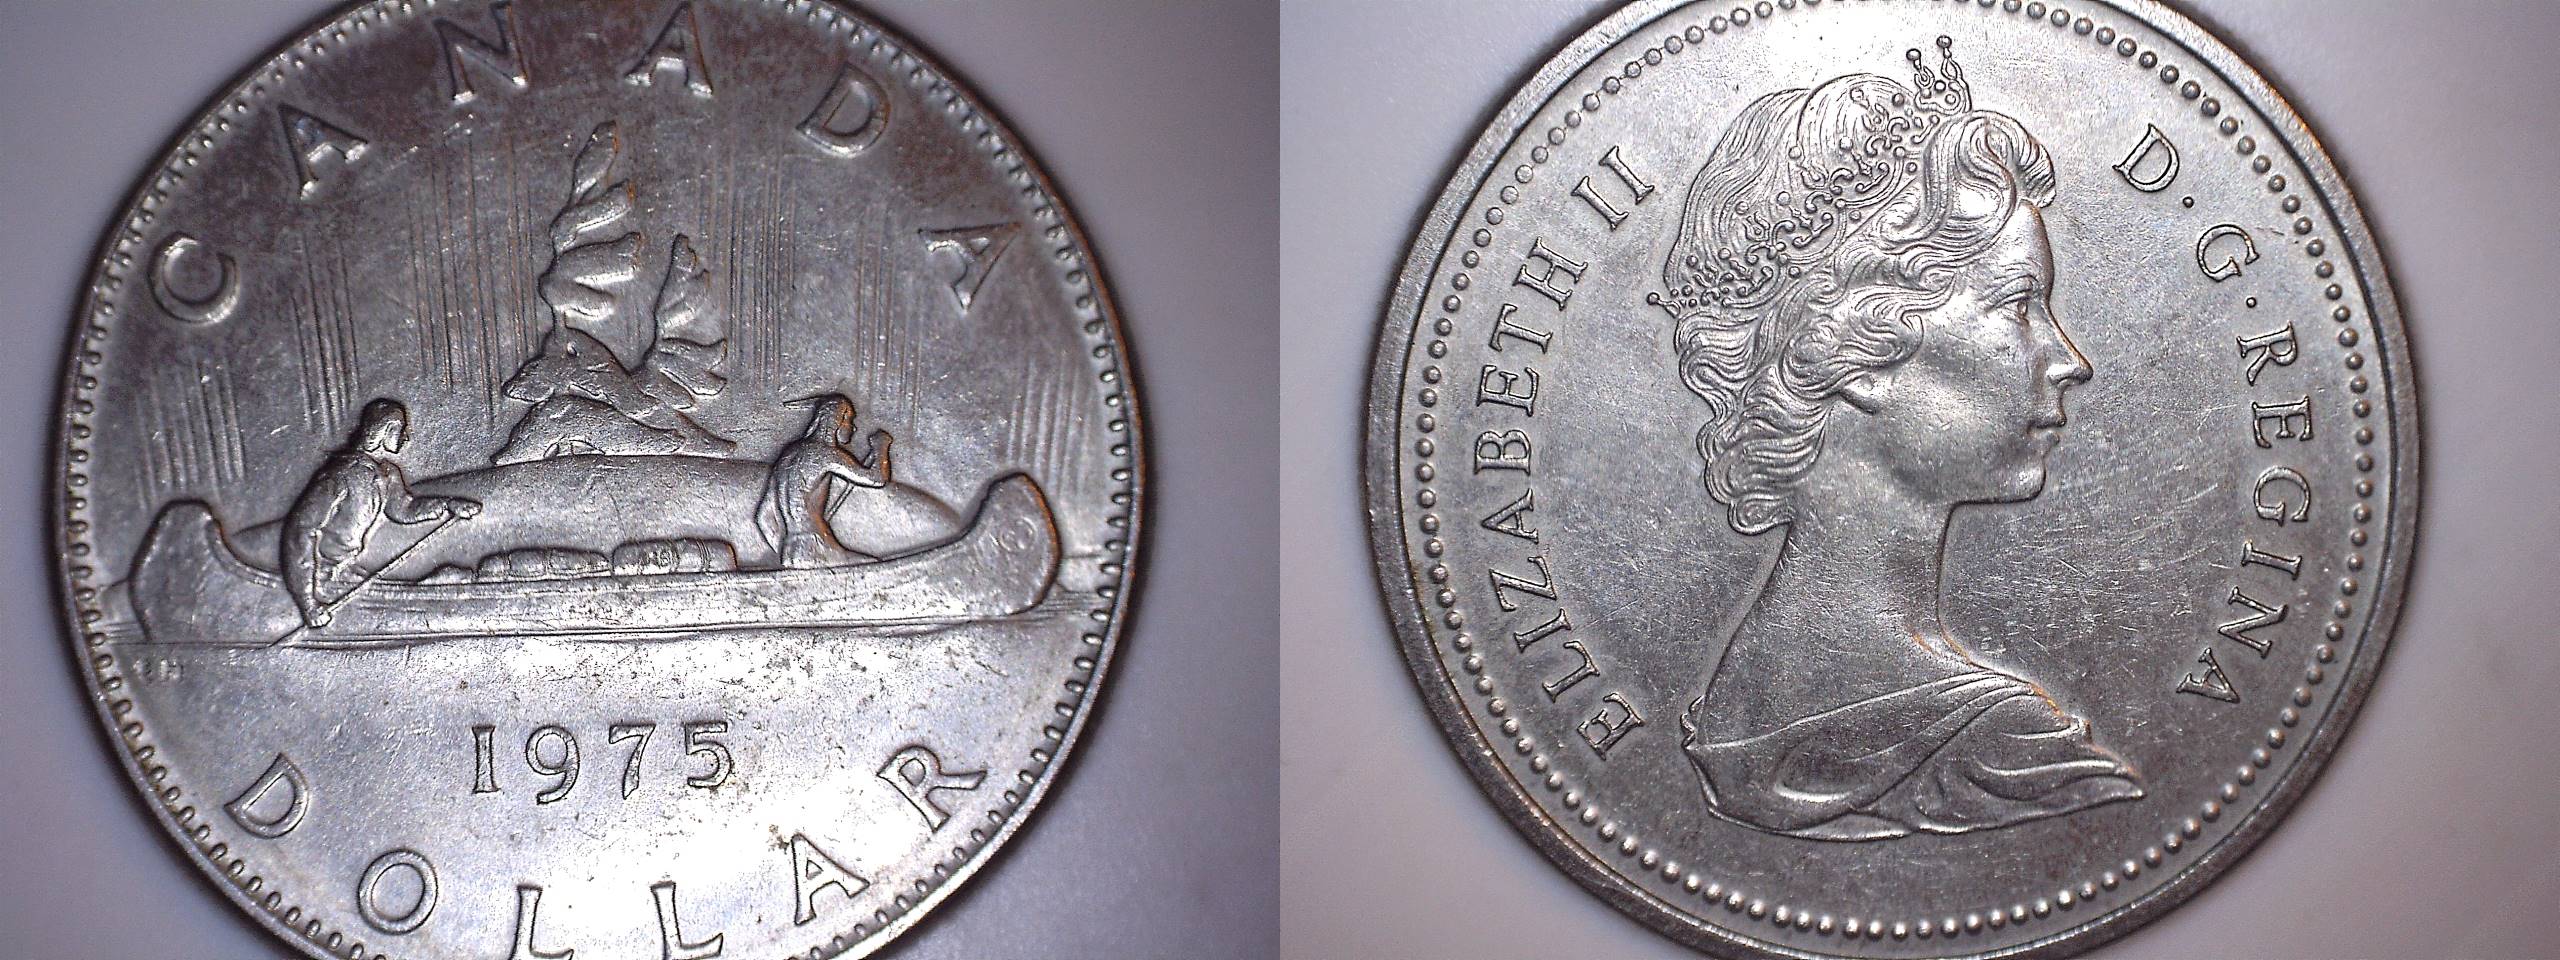 1975 dollar perles avers revers.jpg